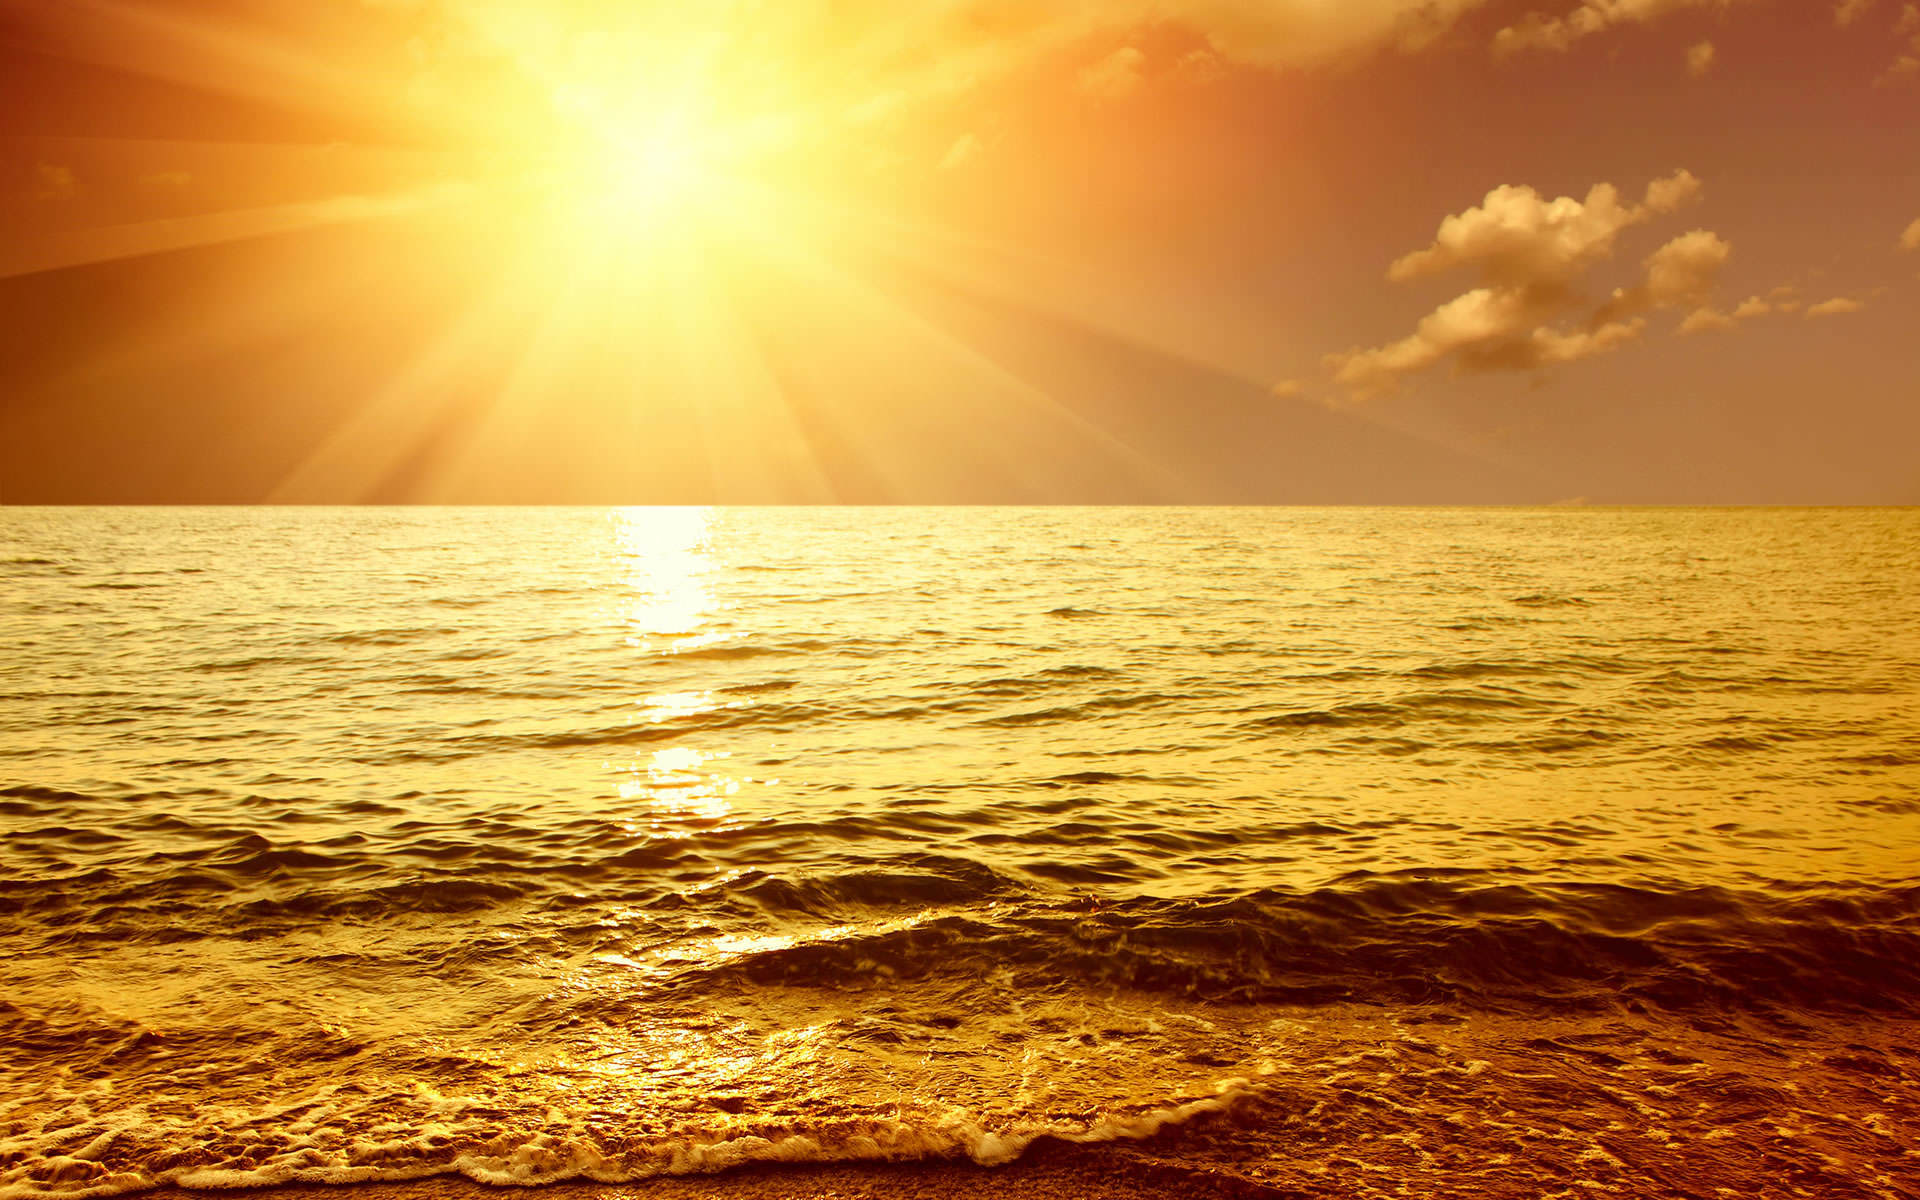 Gold sunset. Море солнце. Закат над морем. Океан солнце. Лучи солнца на море.